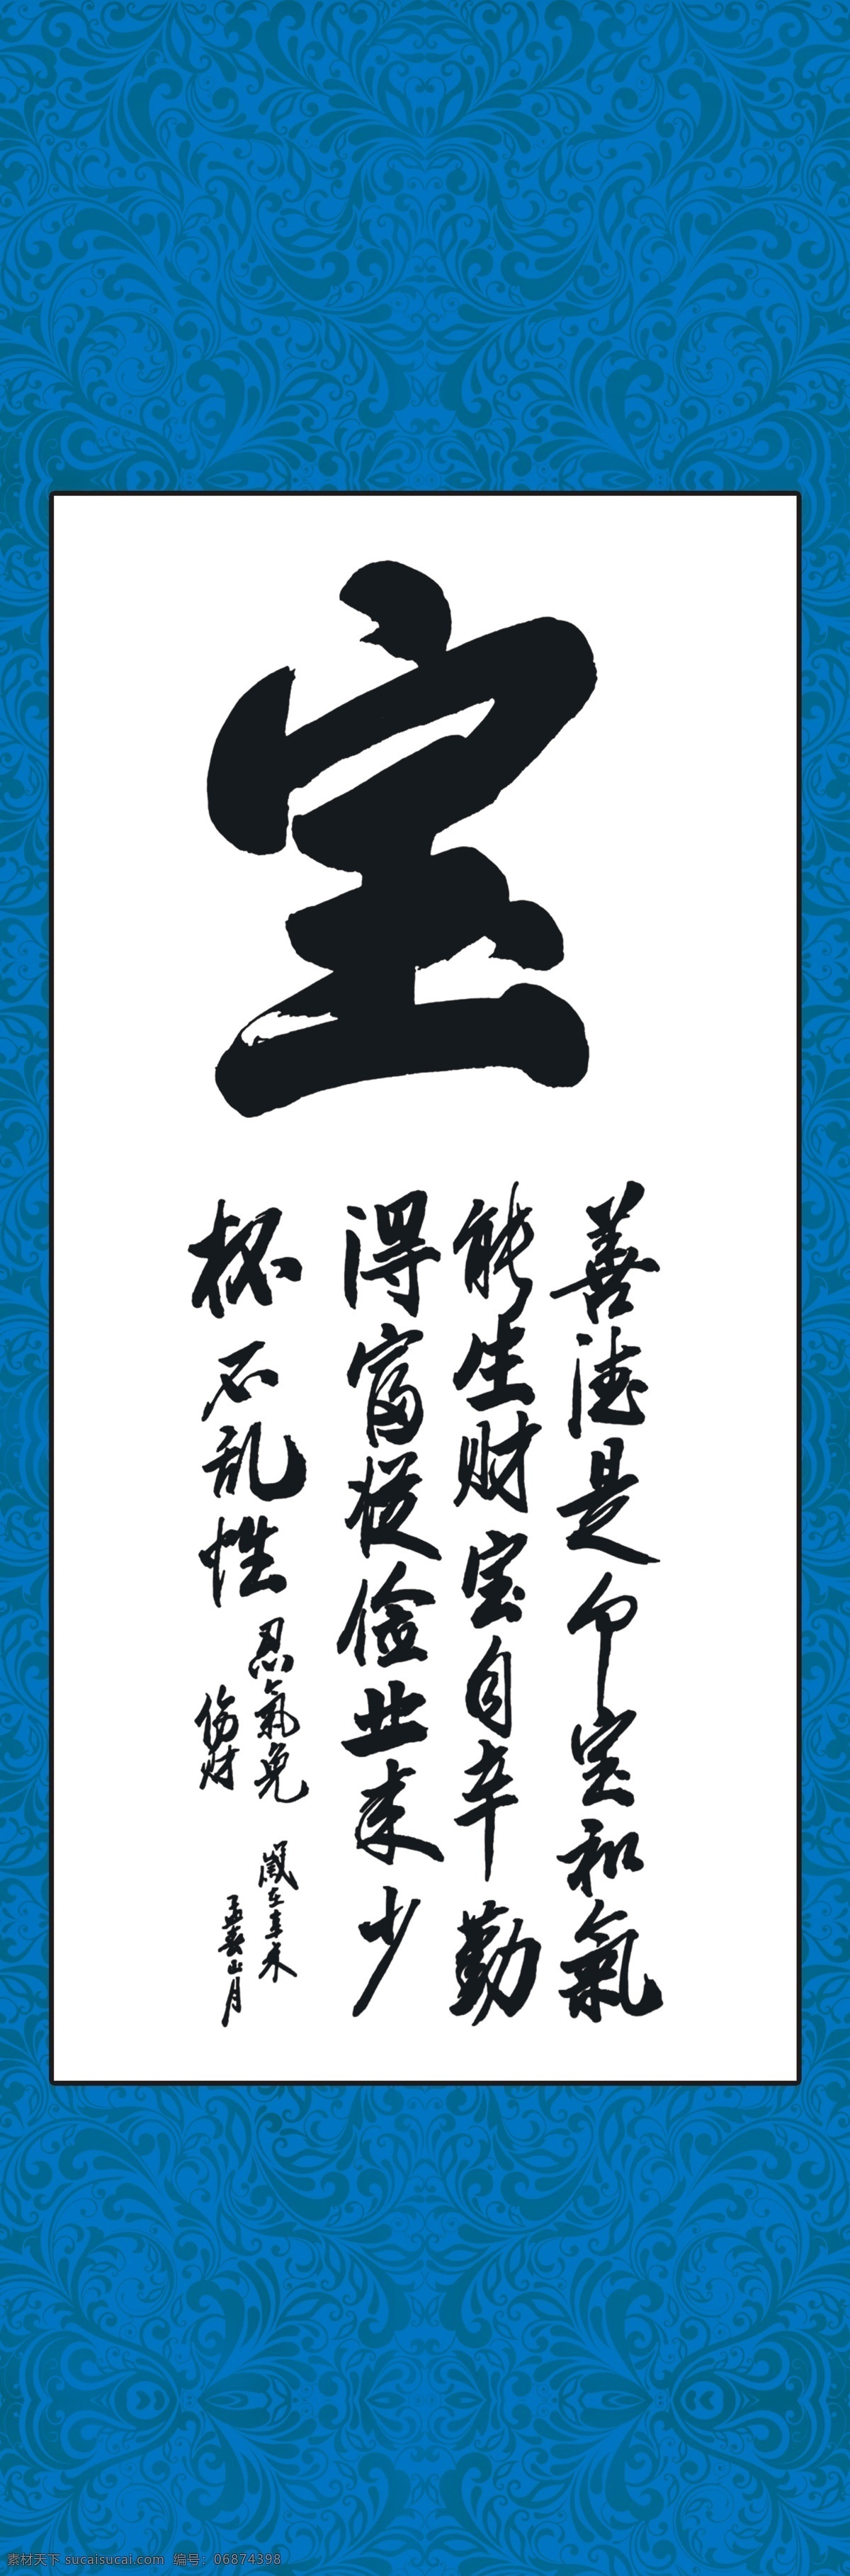 文艺挂轴 宝 书法 艺术 墨宝 书法字 毛笔字 中国风 名人书法 书法艺术 传统书法 挂轴系列